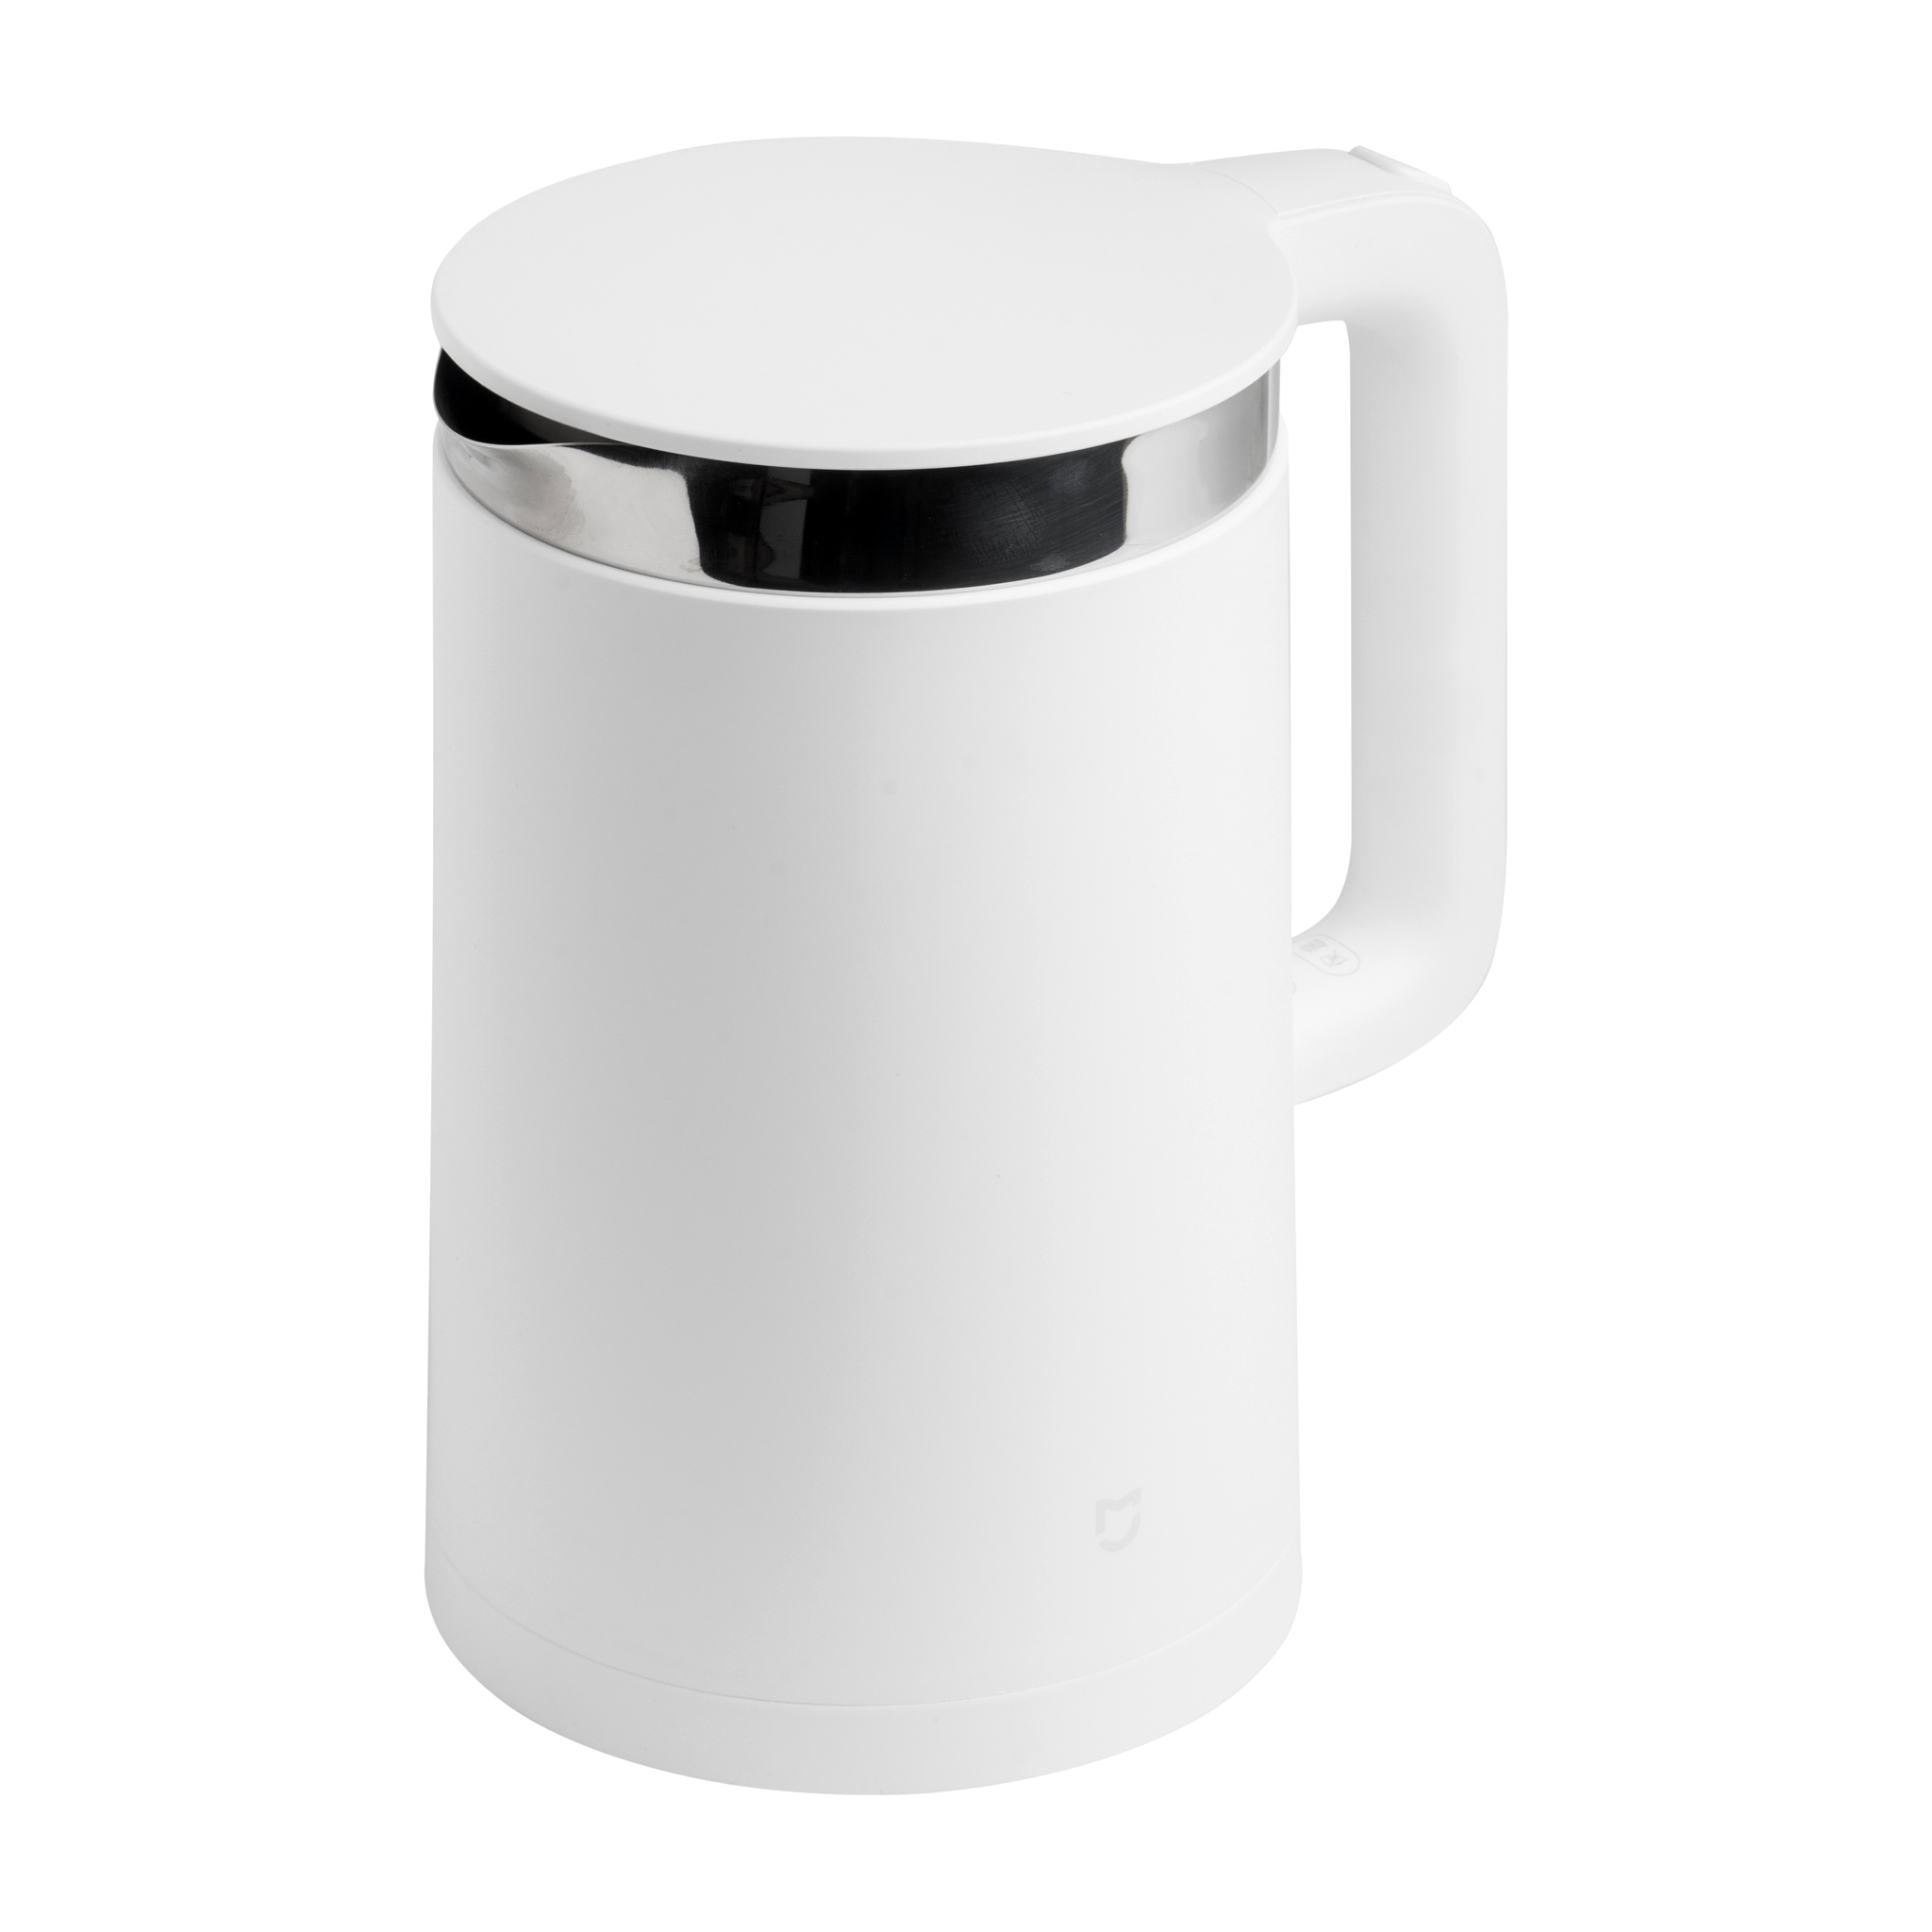 Чайник Xiaomi Smart kettle Bluetooth 2. Чайник Ксиаоми белый с блютуз. Электрический чайник светодиодный блютуз белый. YM-k1501 запчасти. Xiaomi kettle bluetooth